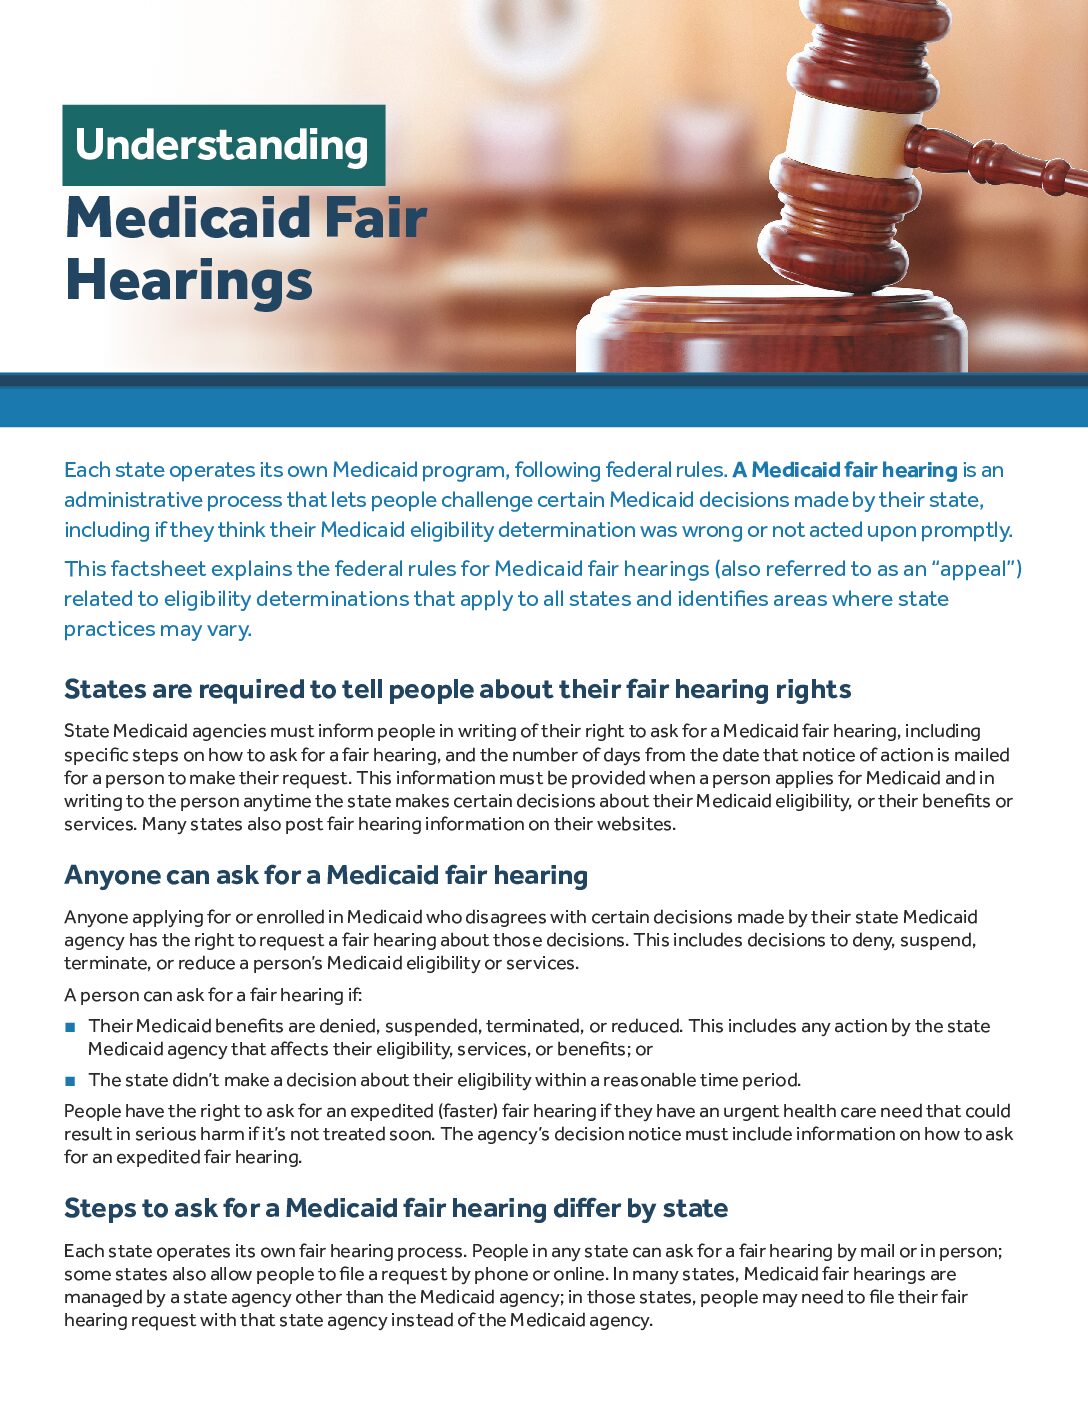 Verständnis der Medicaid Fair Hearings